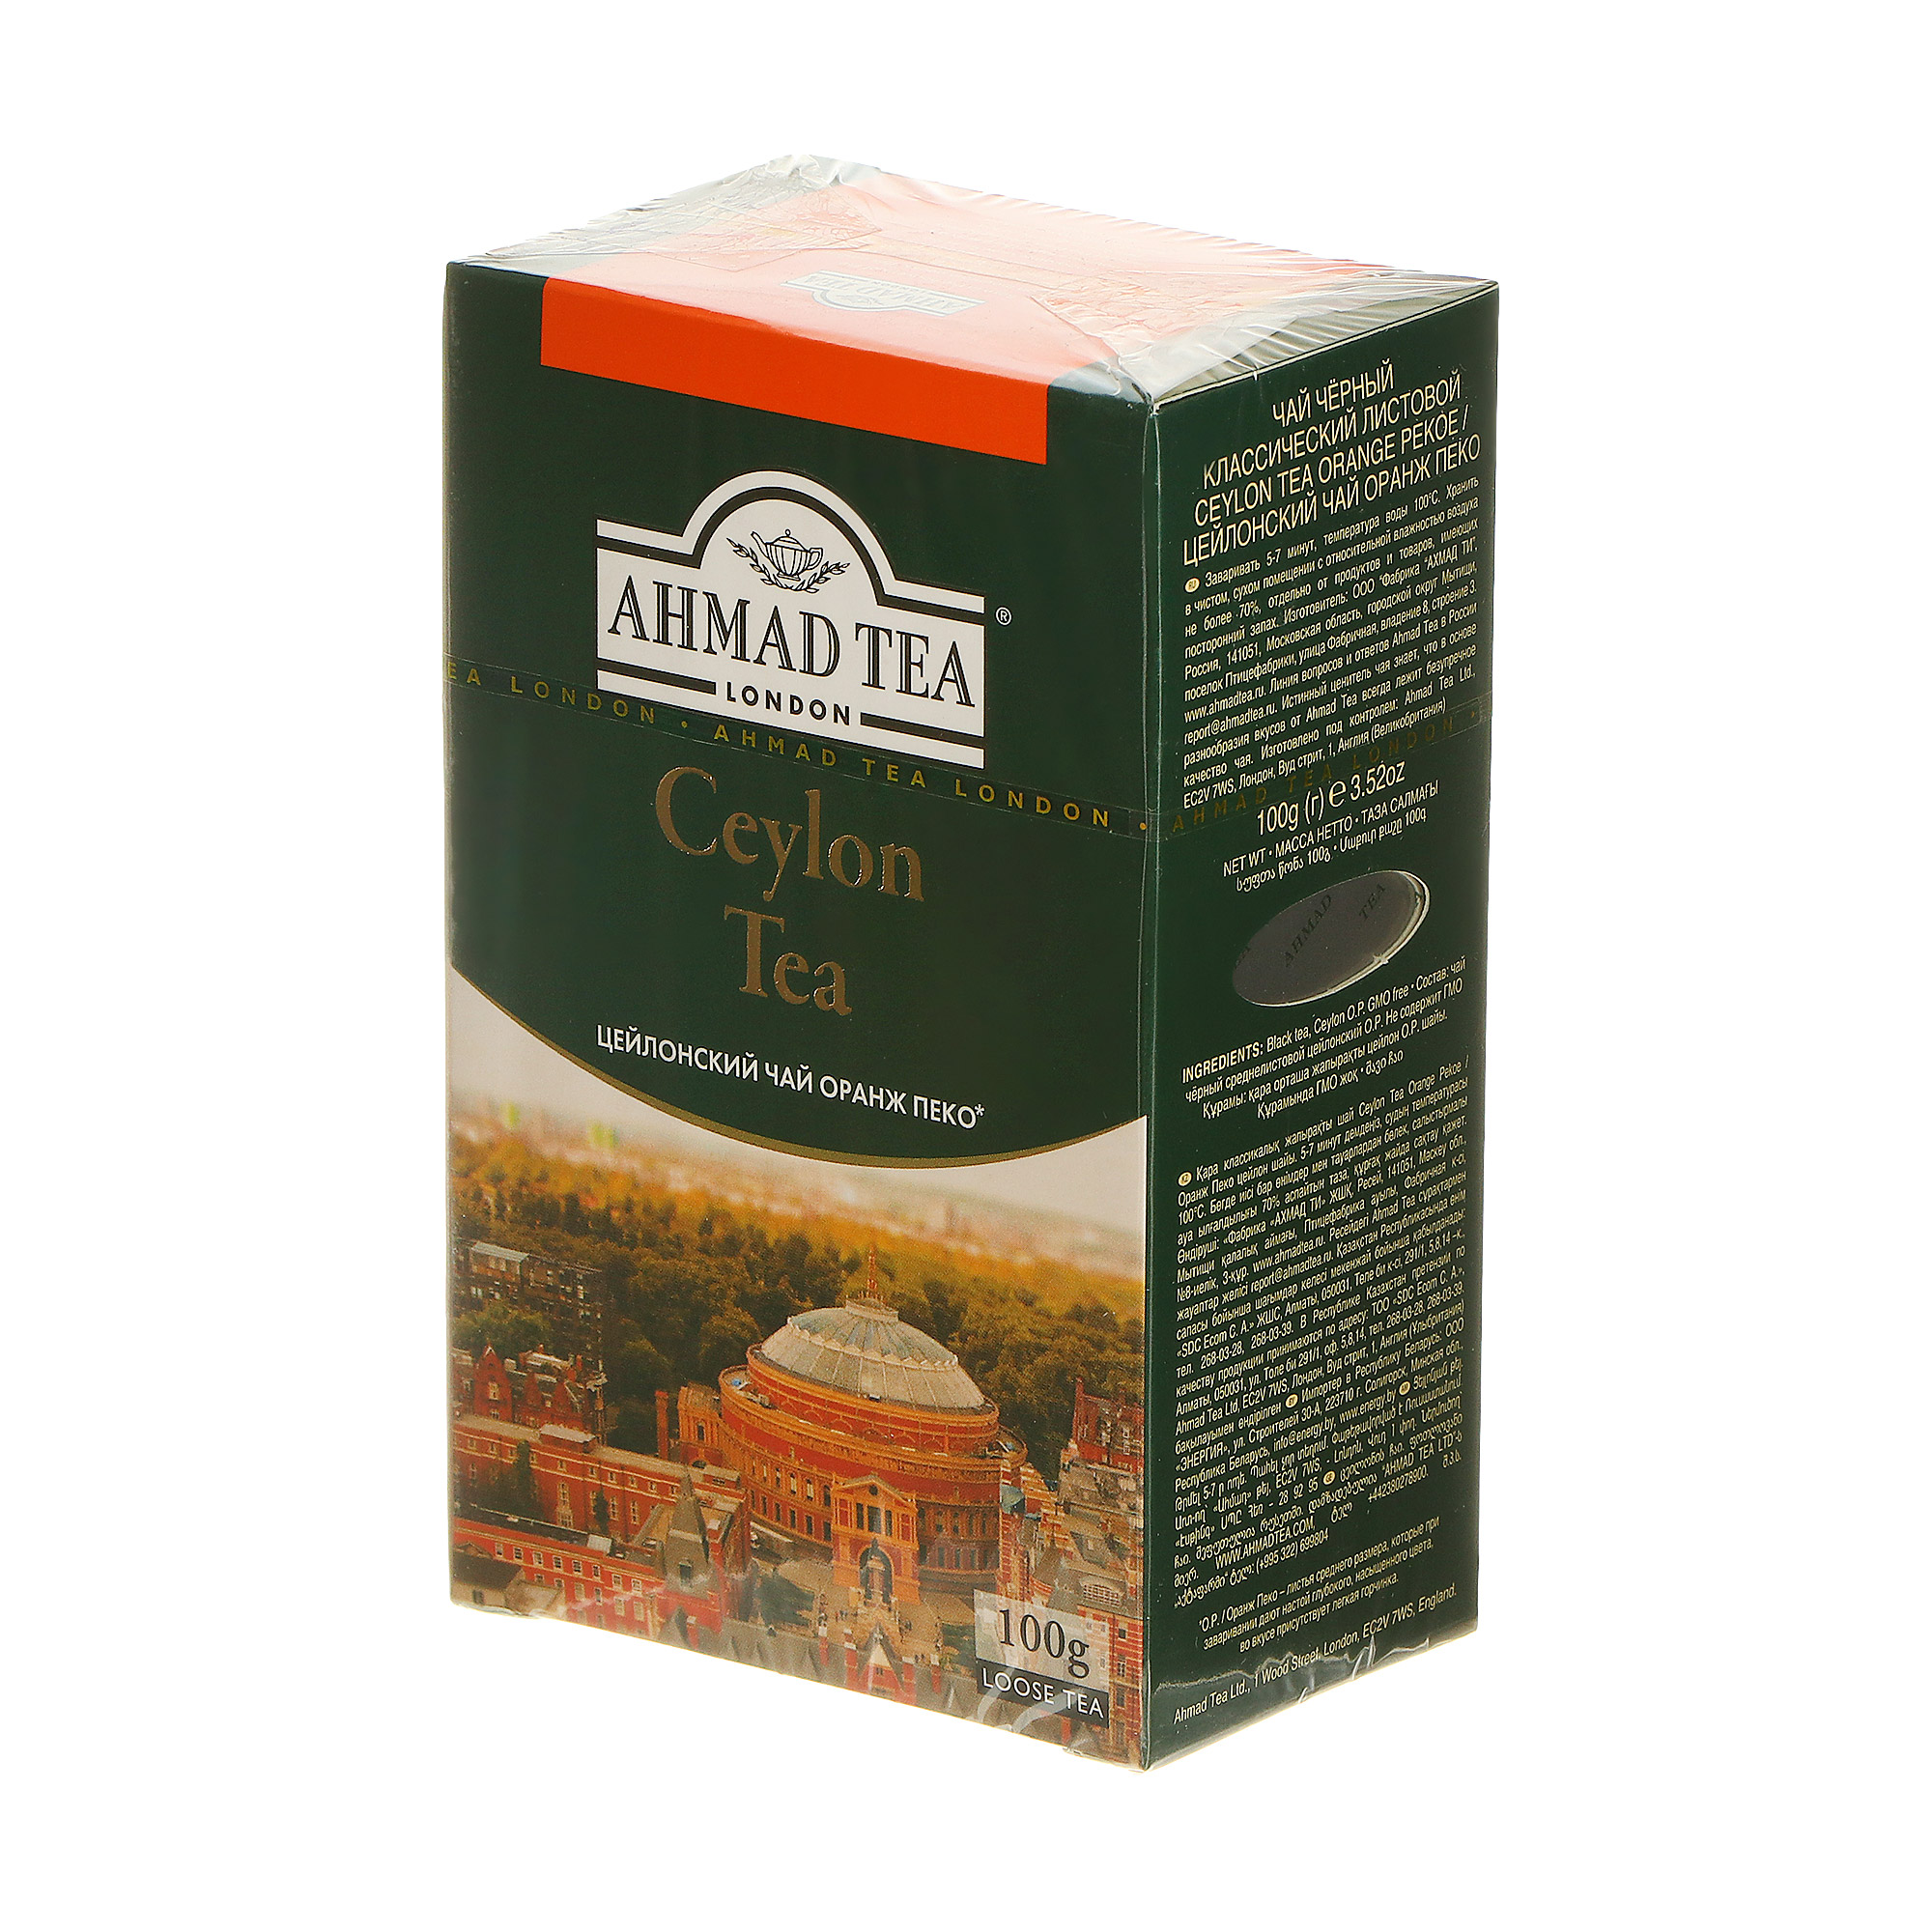 чай черный pekoe shere tea престижная коллекция шри ланка 100 г Чай черный Ahmad Tea Ceylon Tea Orange Pekoe 100 г